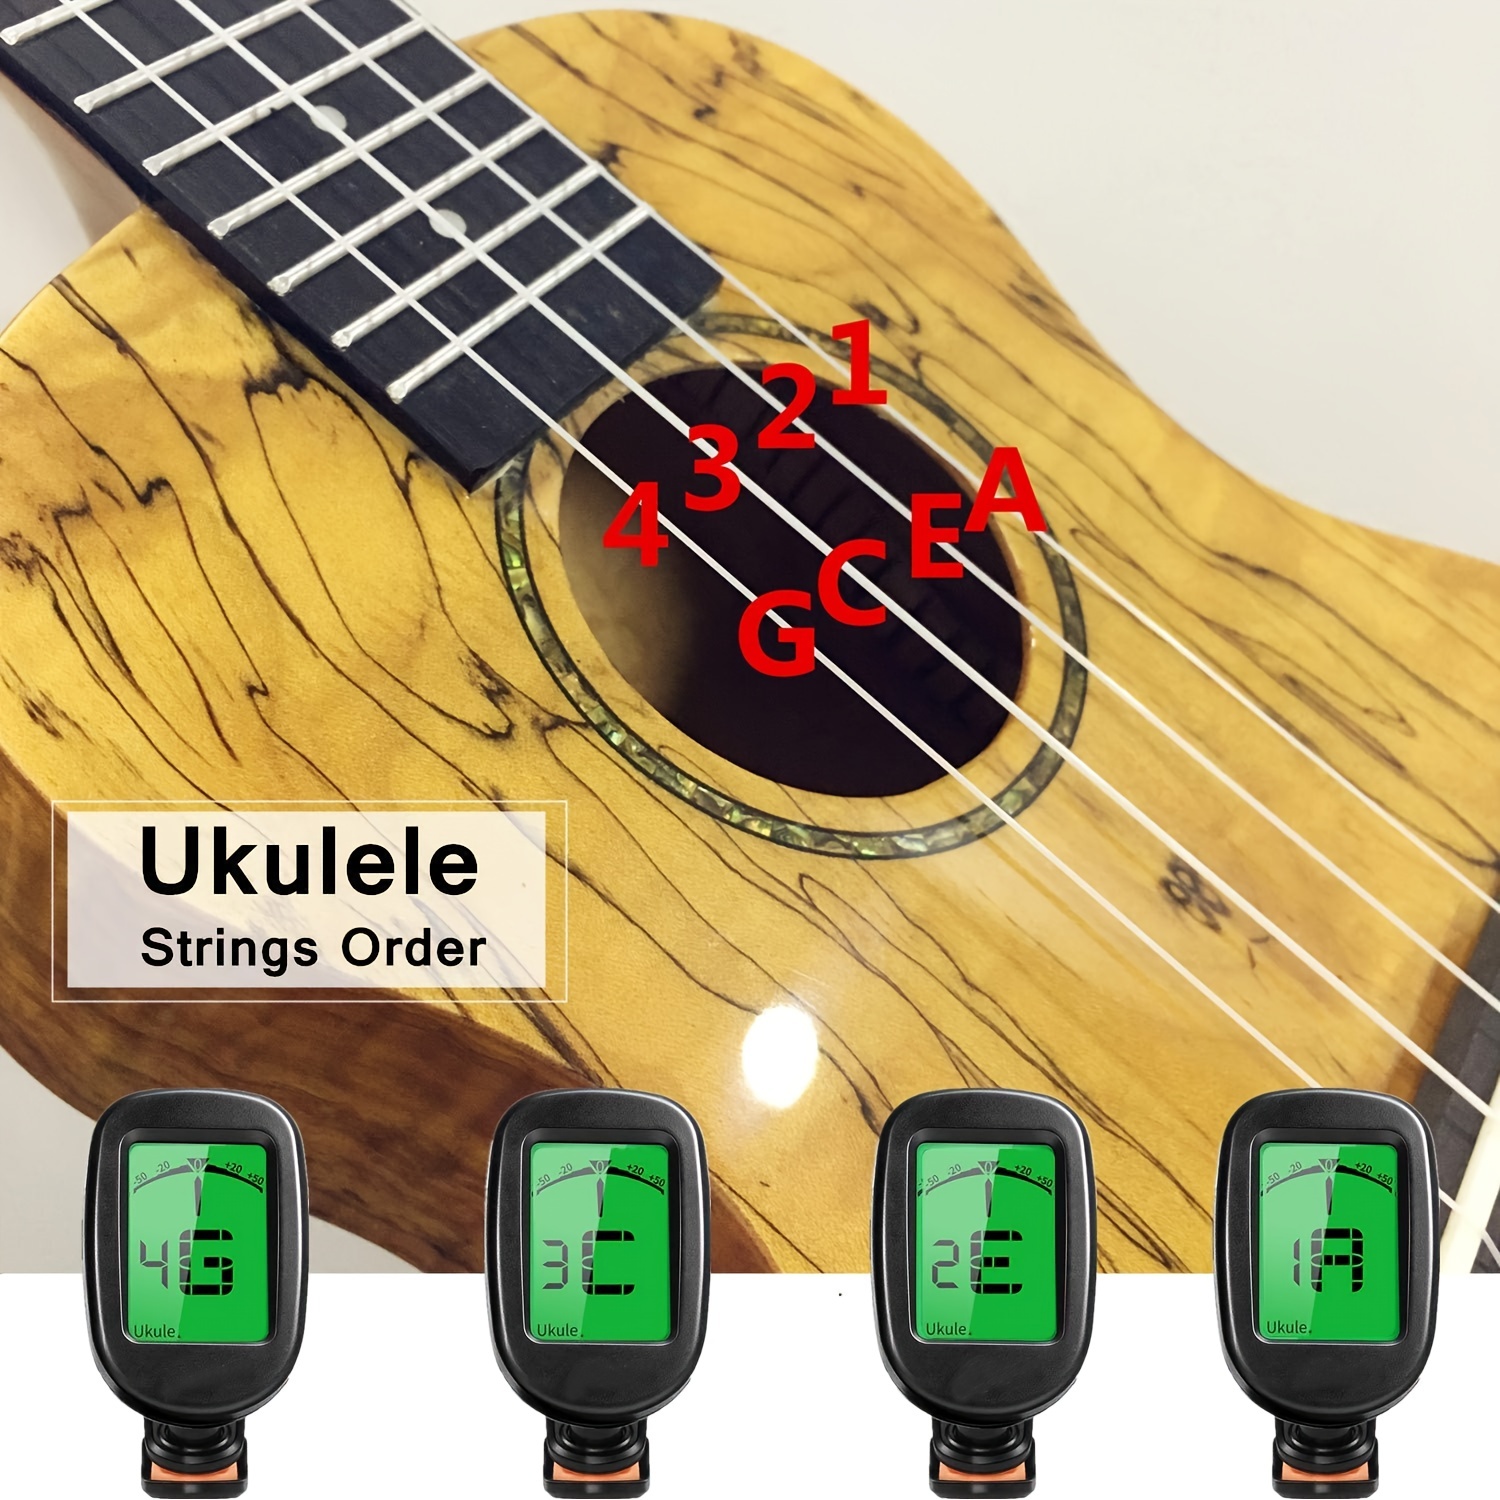 Accordeur de guitare rechargeable avec médiator de guitare LED, accordeur à  clipser avec écran couleur LCD pour tous les instruments à cordes : guitare,  ukulélé, violon, mandoline, banjo et modes d'accordage chromatique (